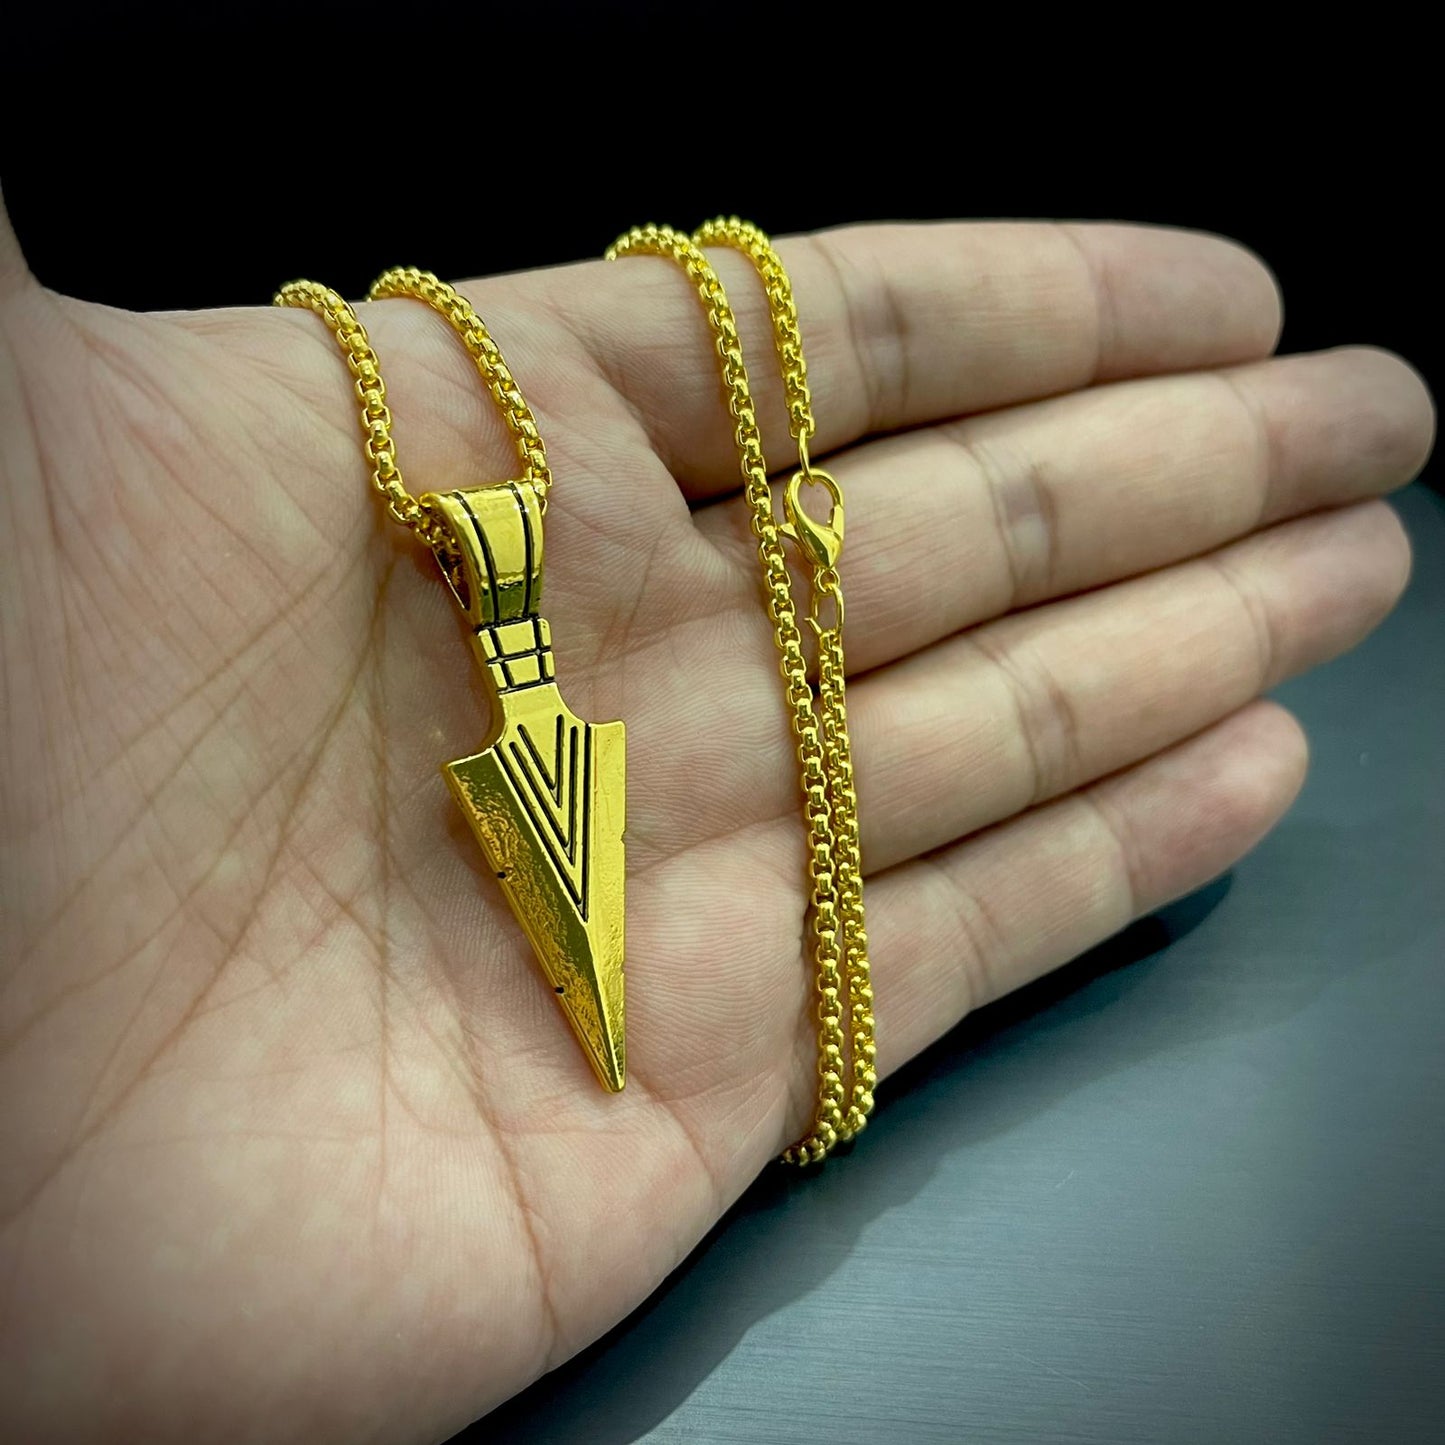 Buy Stainless Steel Golden Arrow Pendant Necklace For Men online in Pakistan